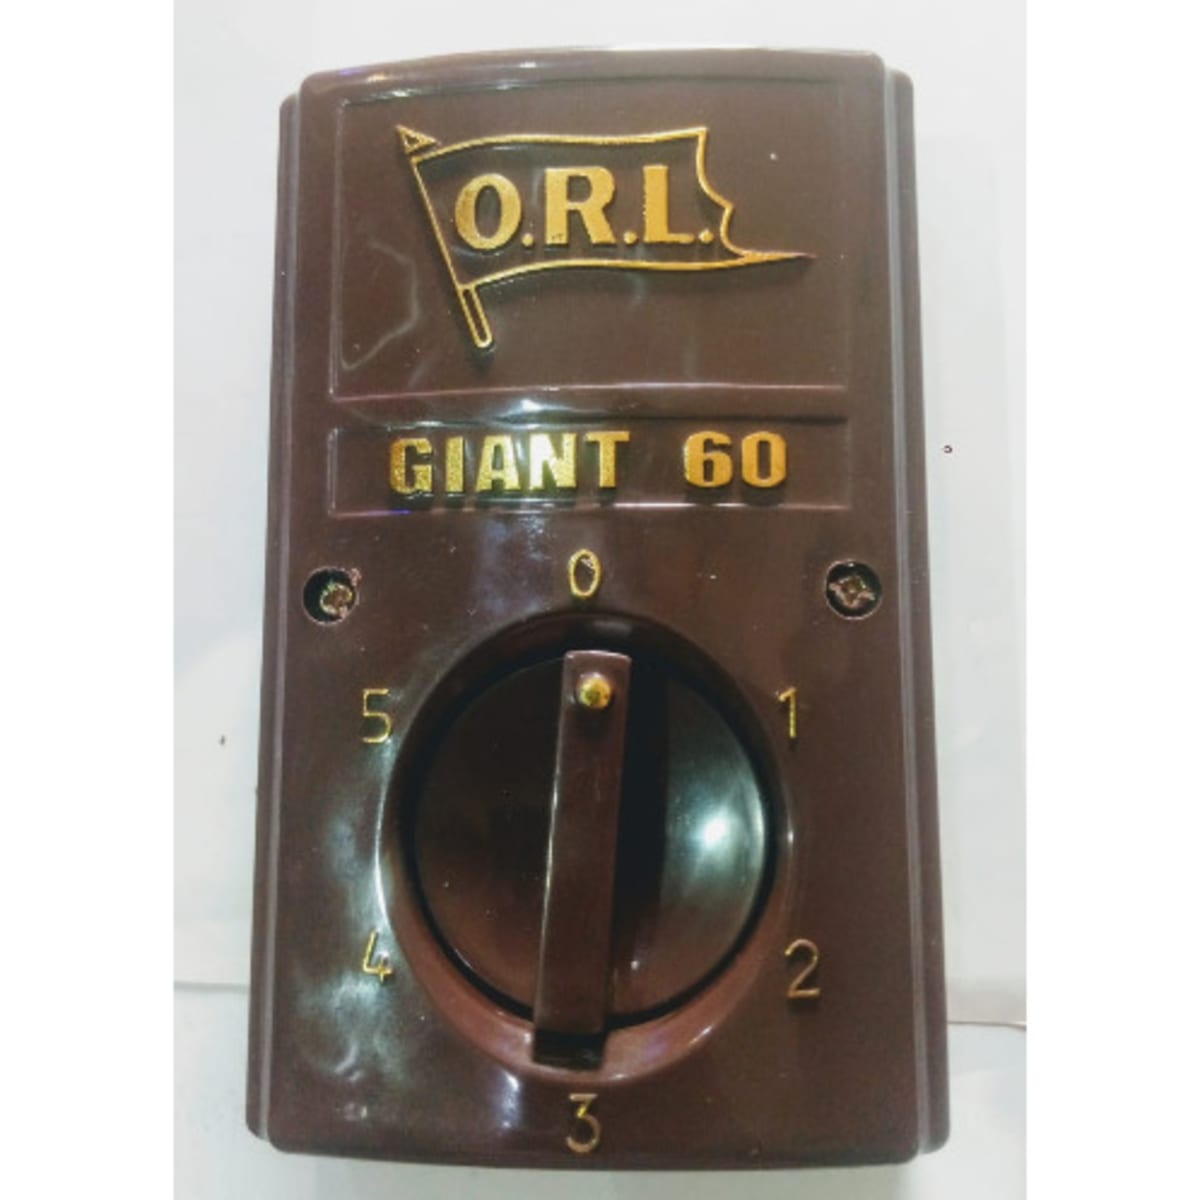 Orl Giant 60 Ceiling Fan Regulator